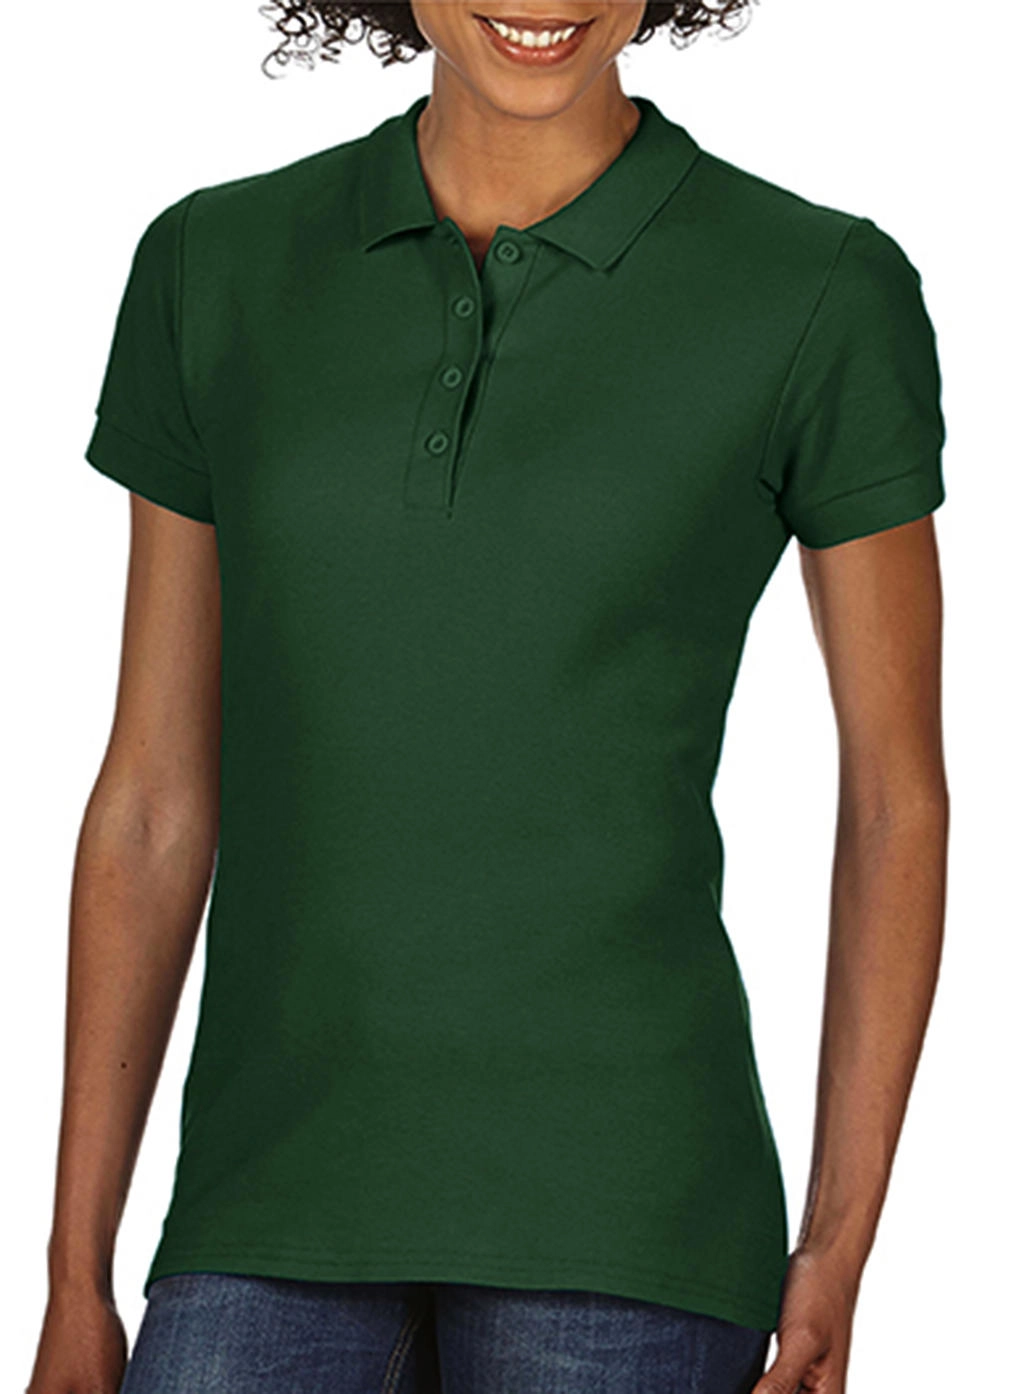 Softstyle® Ladies Double Pique Polo zum Besticken und Bedrucken in der Farbe Forest Green mit Ihren Logo, Schriftzug oder Motiv.